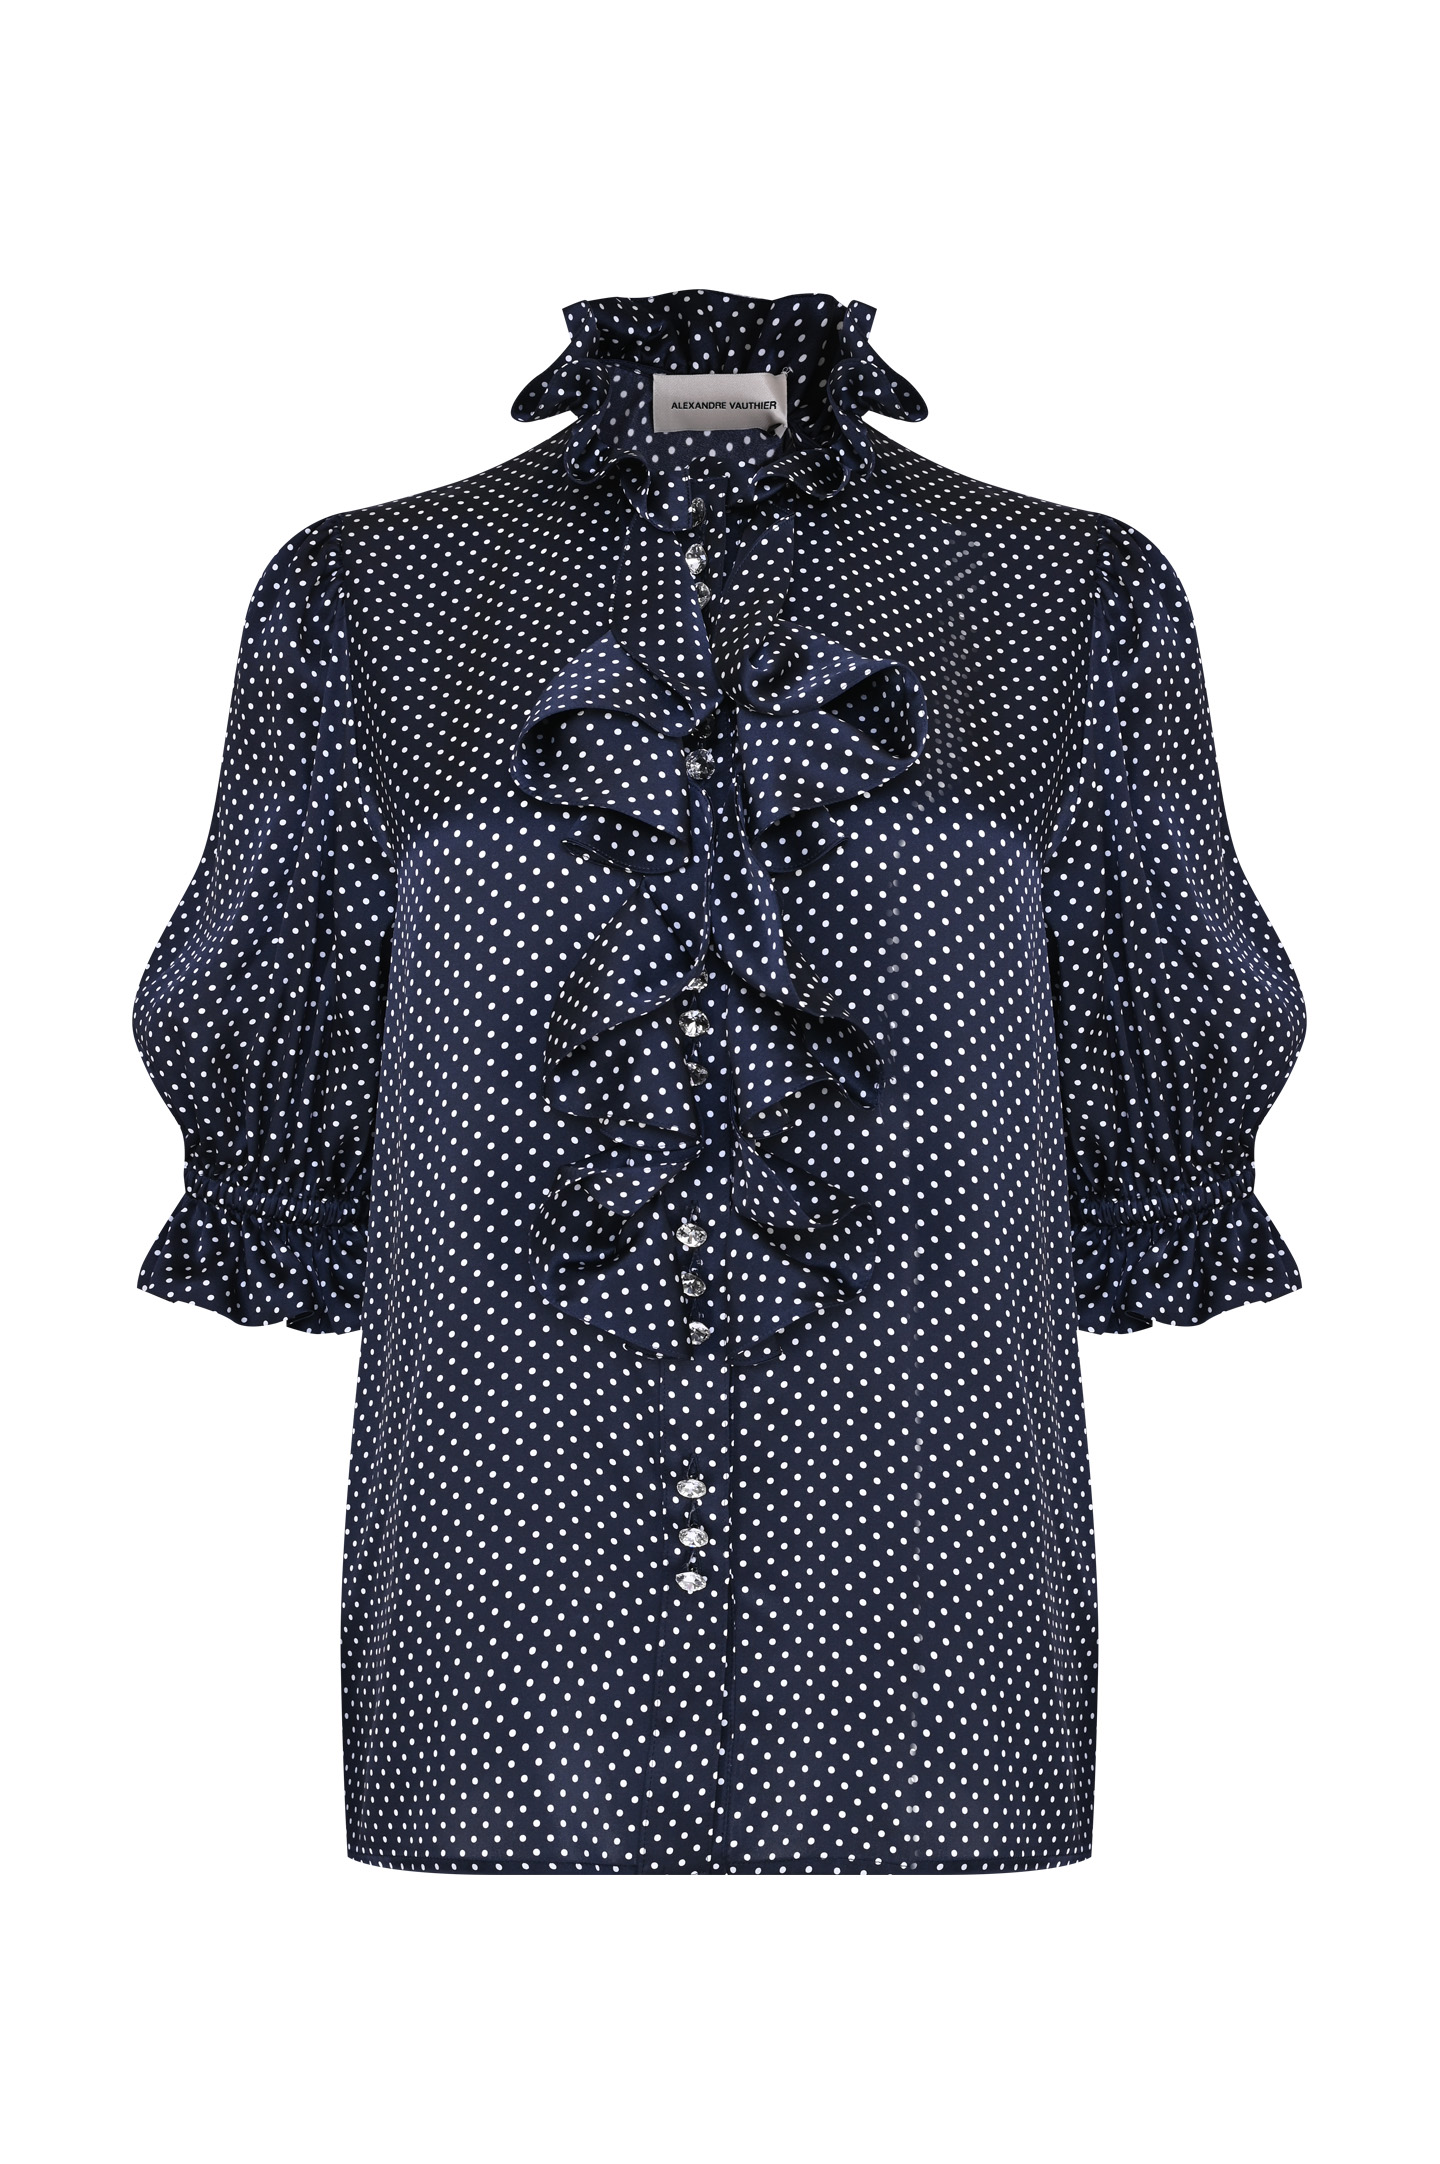 Блуза ALEXANDRE VAUTHIER 231SH18021808, цвет: Синий, Женский